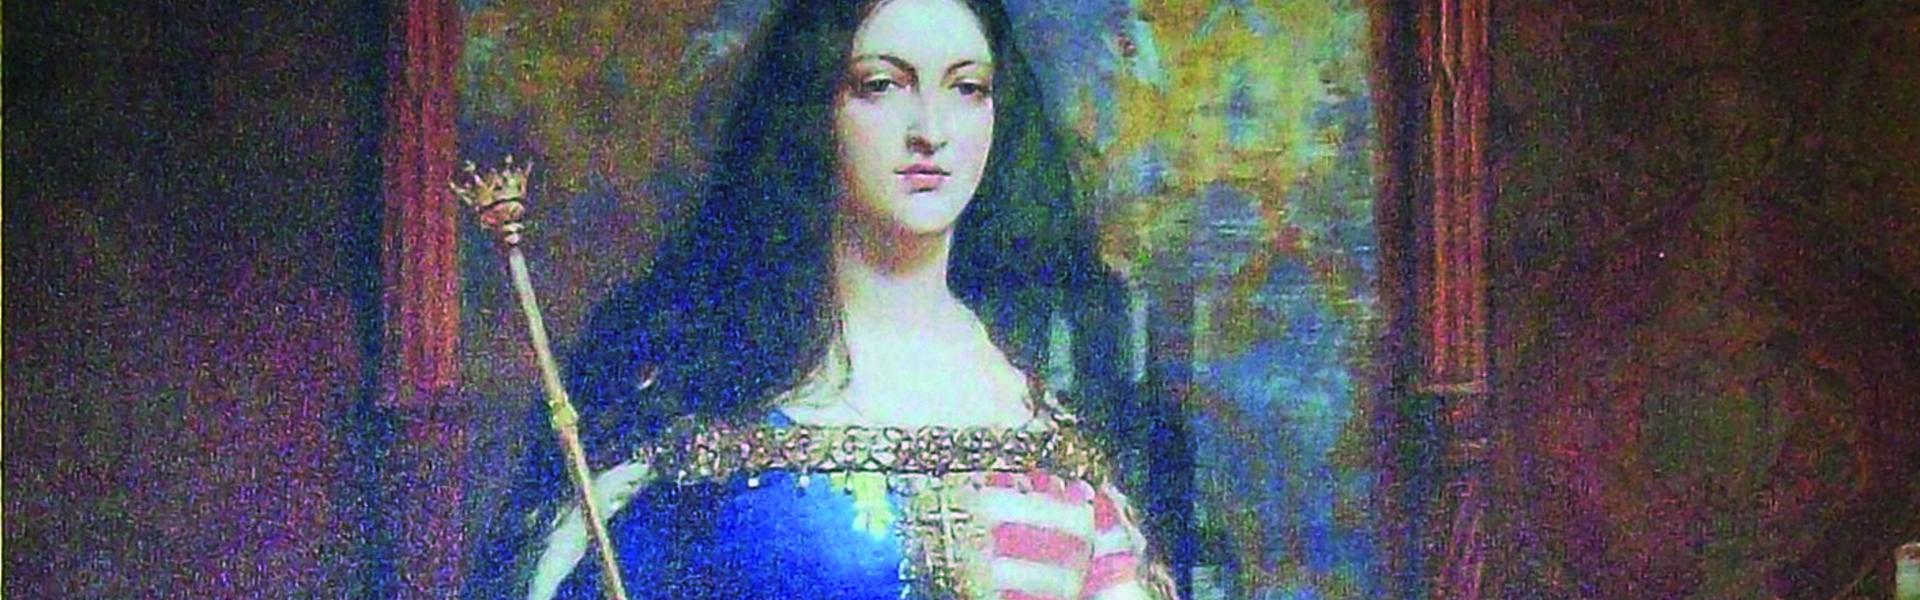 Obraz przedstawiający wizerunek św. królowej Jadwigi